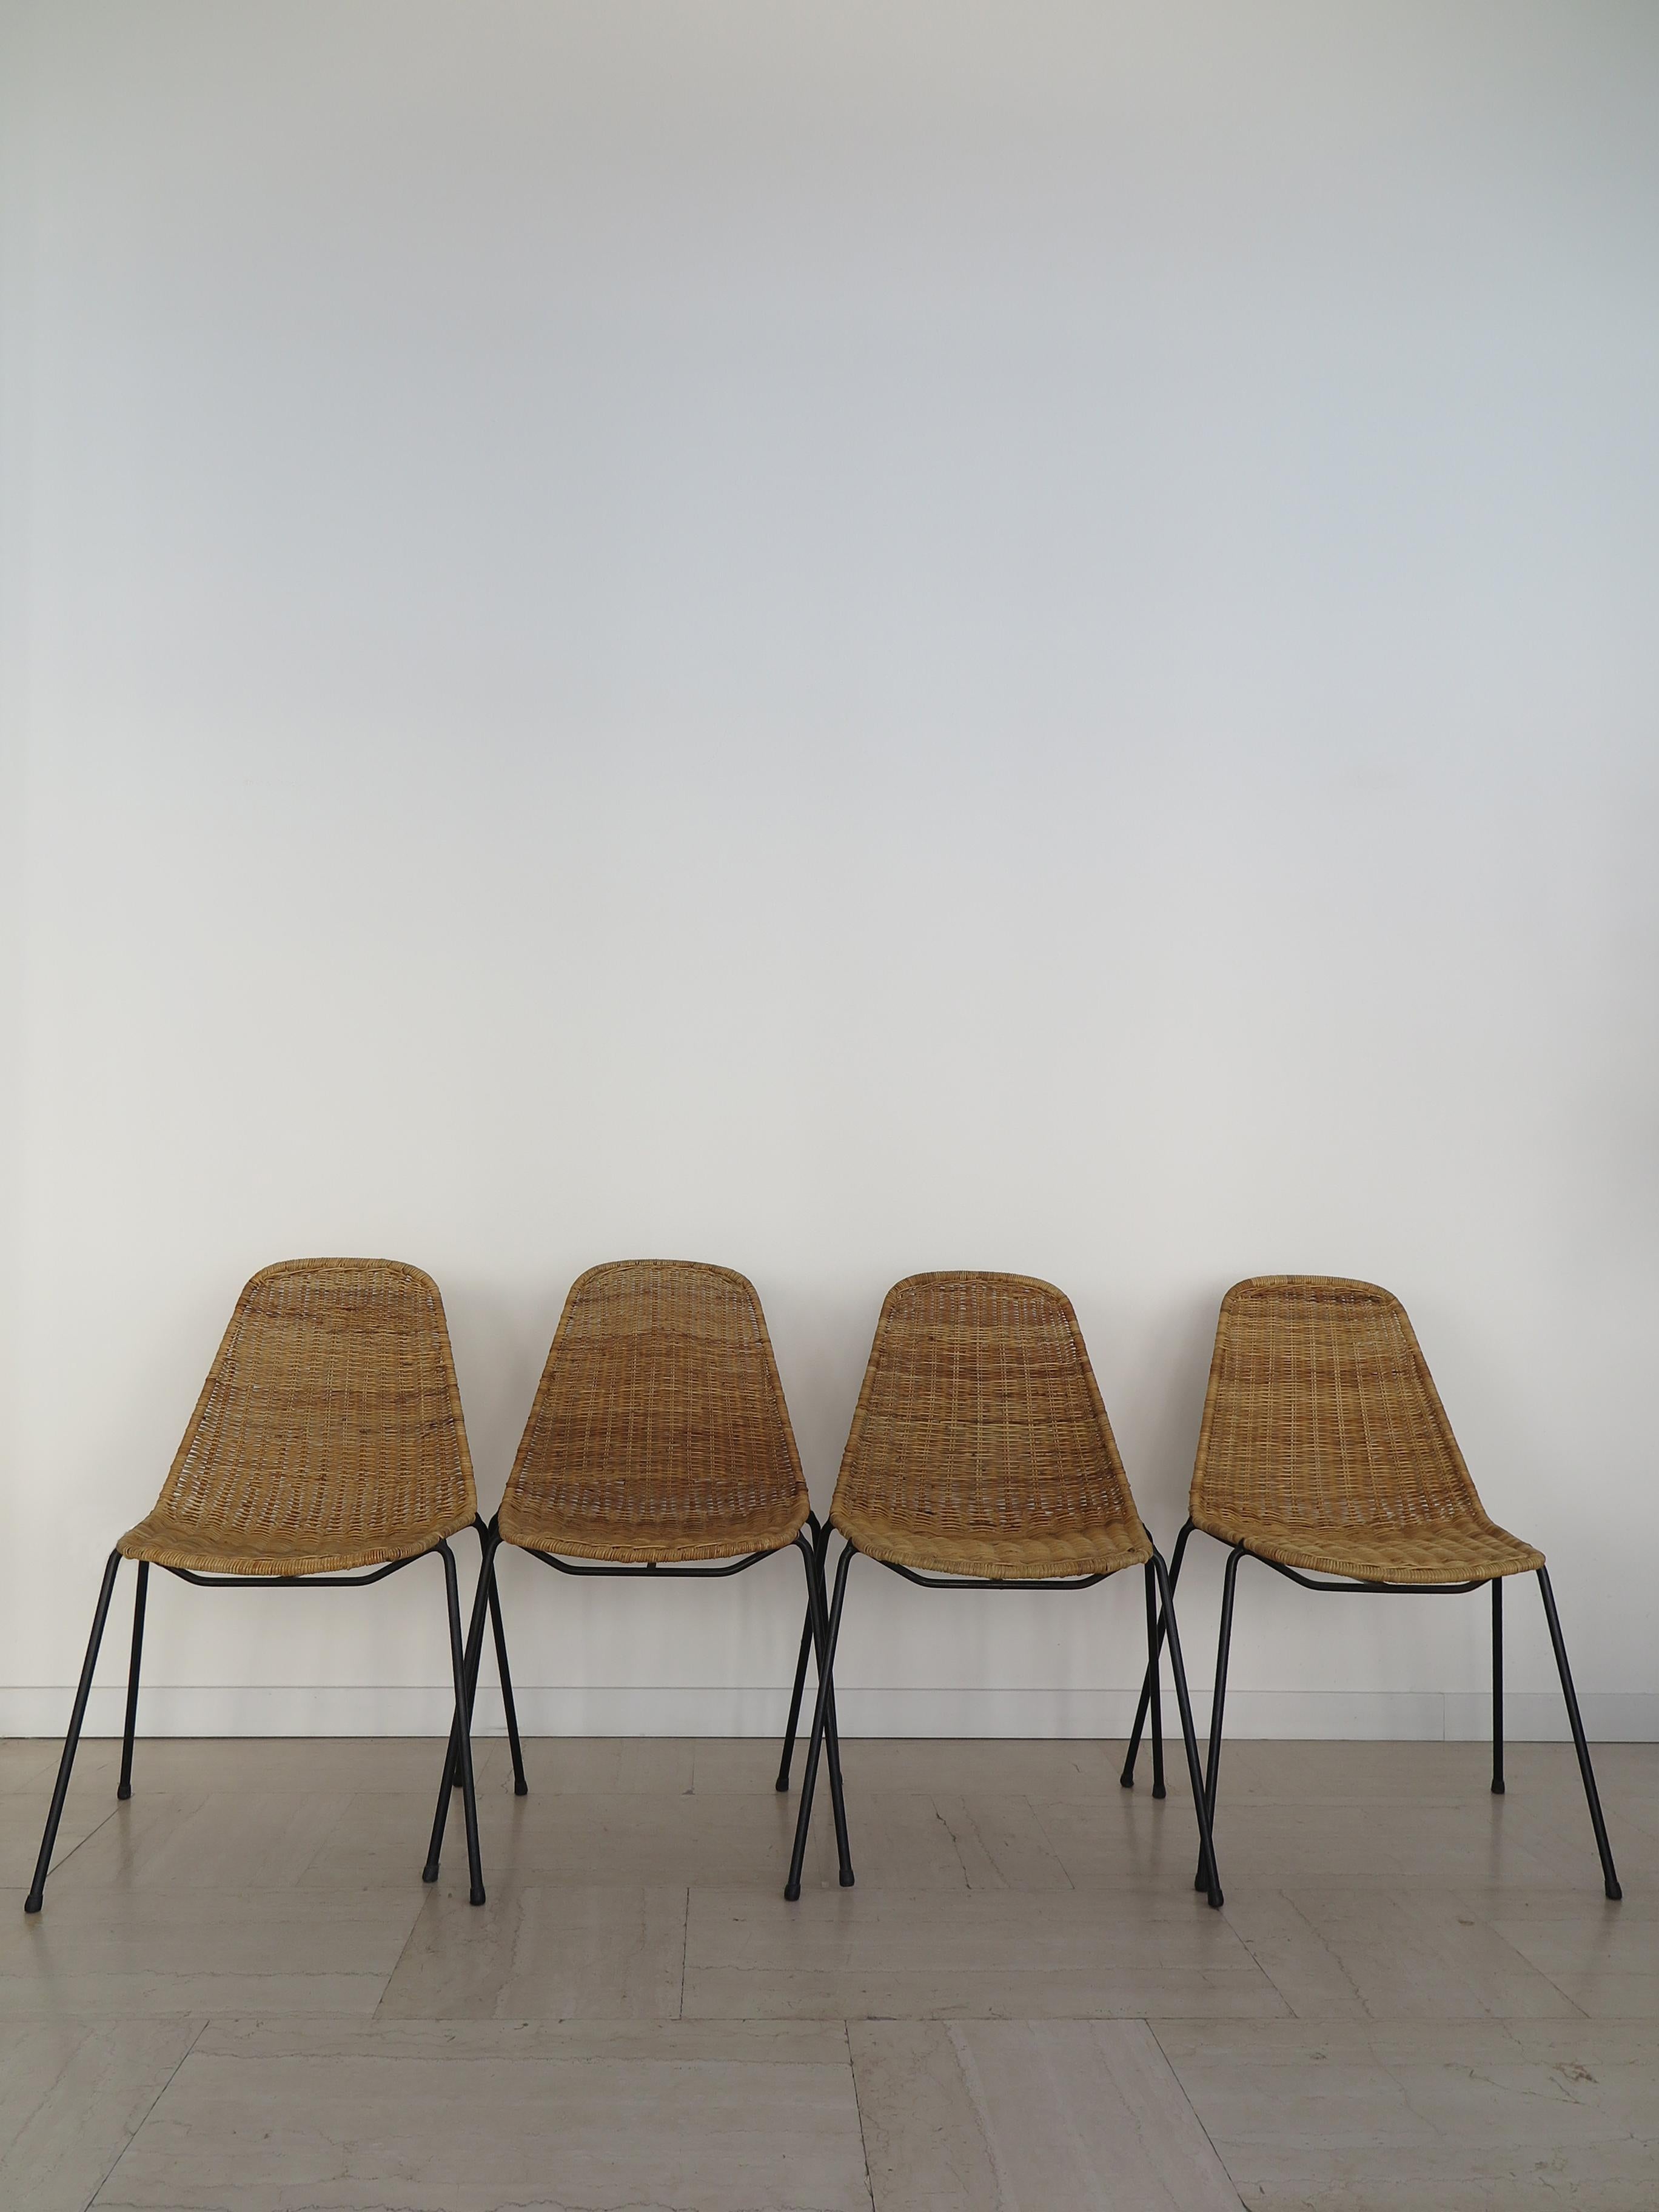 Ensemble de quatre chaises de salle à manger italiennes de style moderne du milieu du siècle, avec structure en métal laqué noir et assise en rotin, modèle Basket conçu par Franco Campo et Carlo Graffi et produit par Home, Italie, années